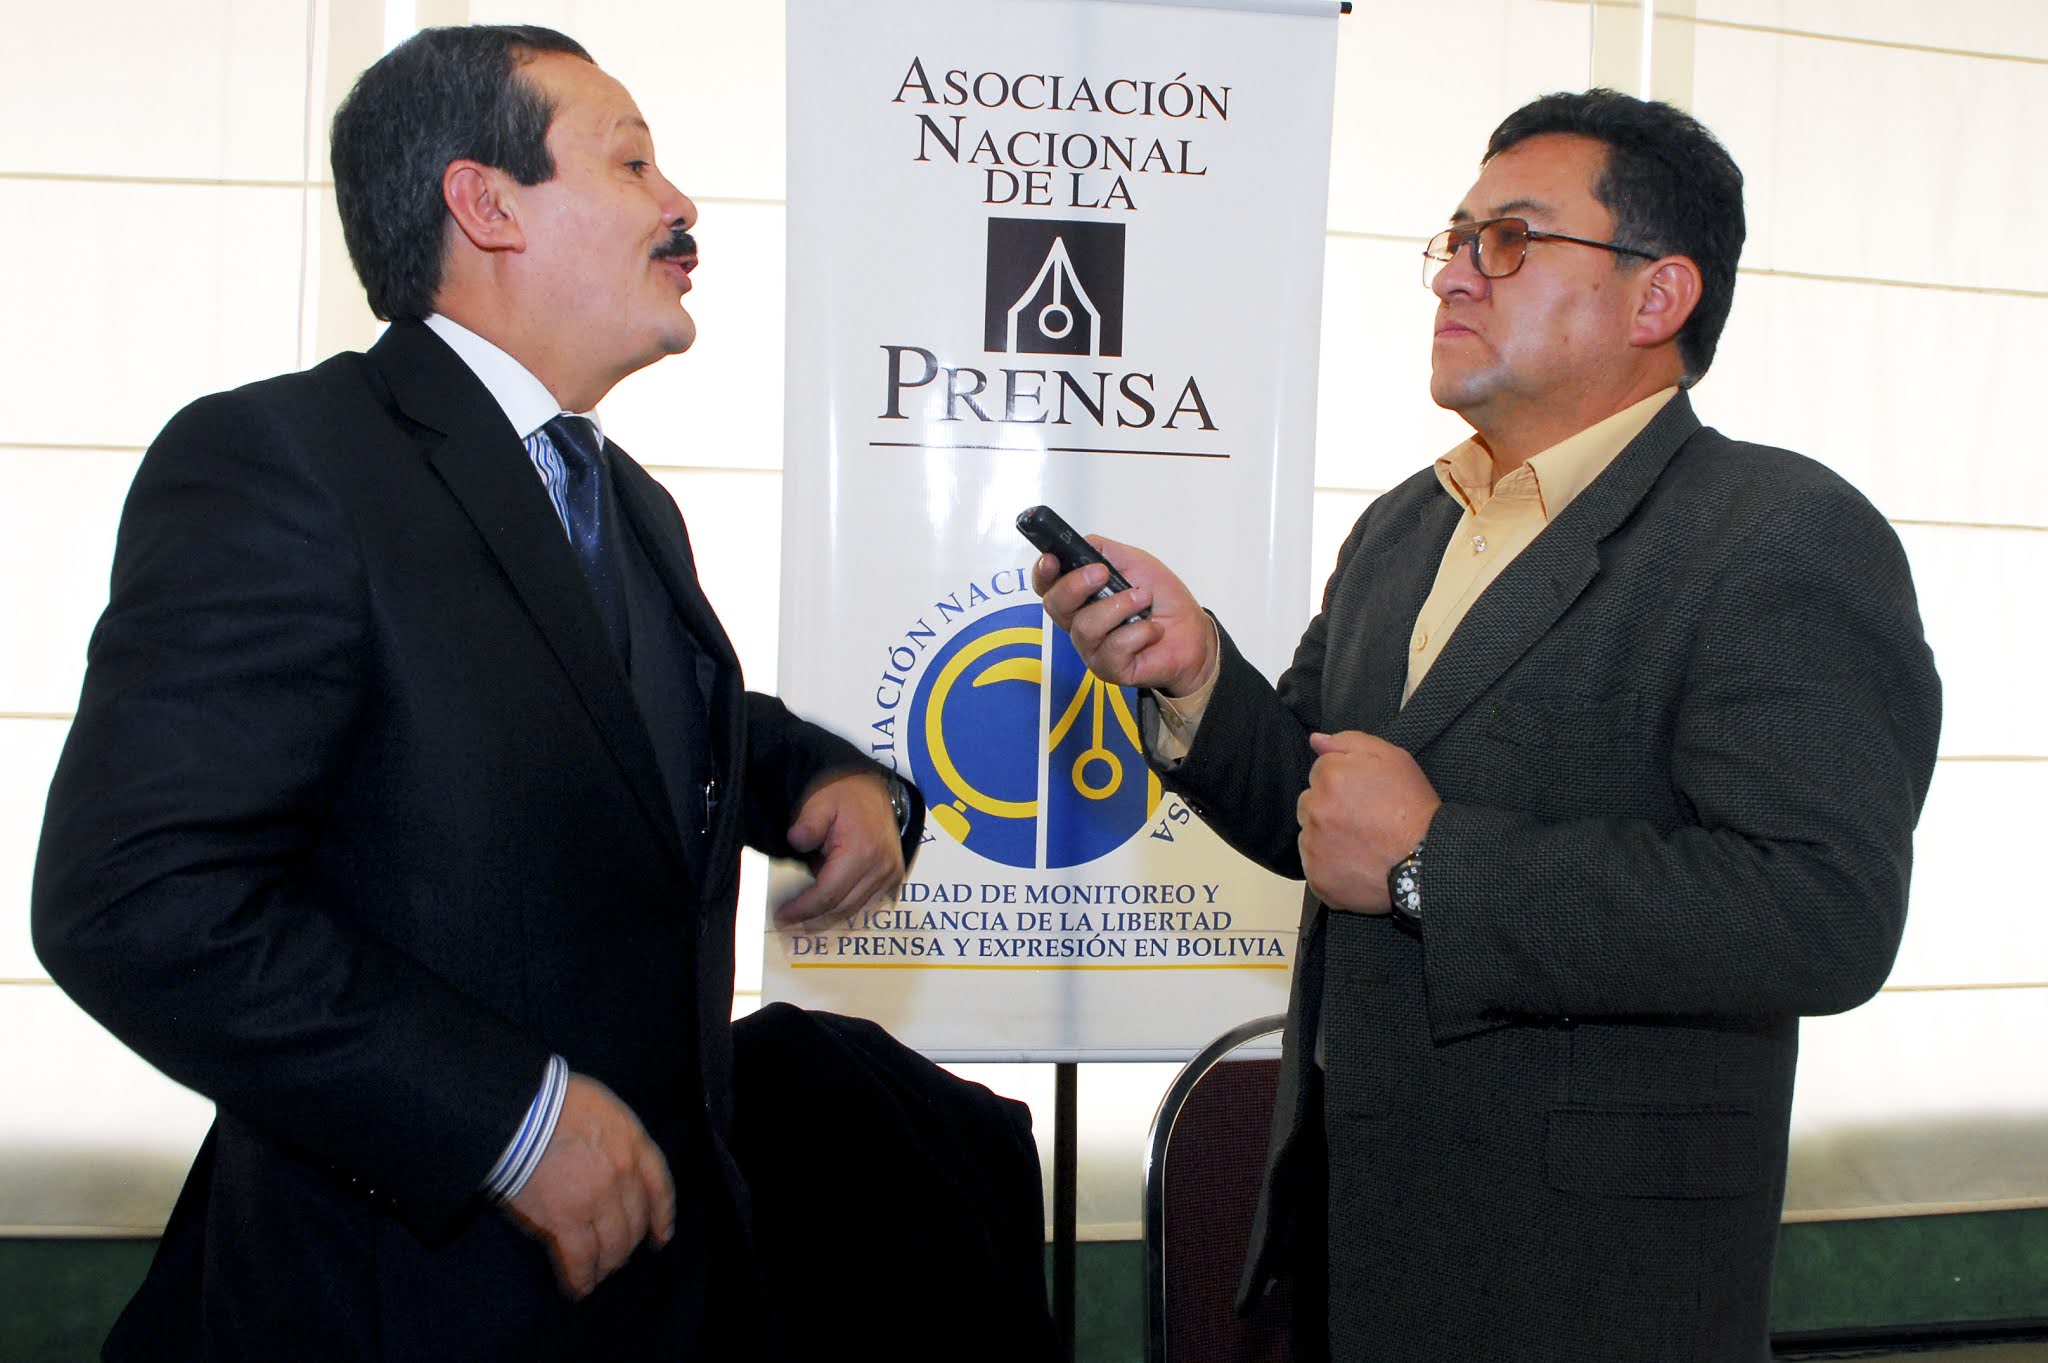 El abogado constitucionalista José Antonio Rivera es entrevistado por el periodista Edwin Flores Araoz, en un evento organizado por la ANP, en el año 2014 / FRANZ CHÁVEZ / ANP